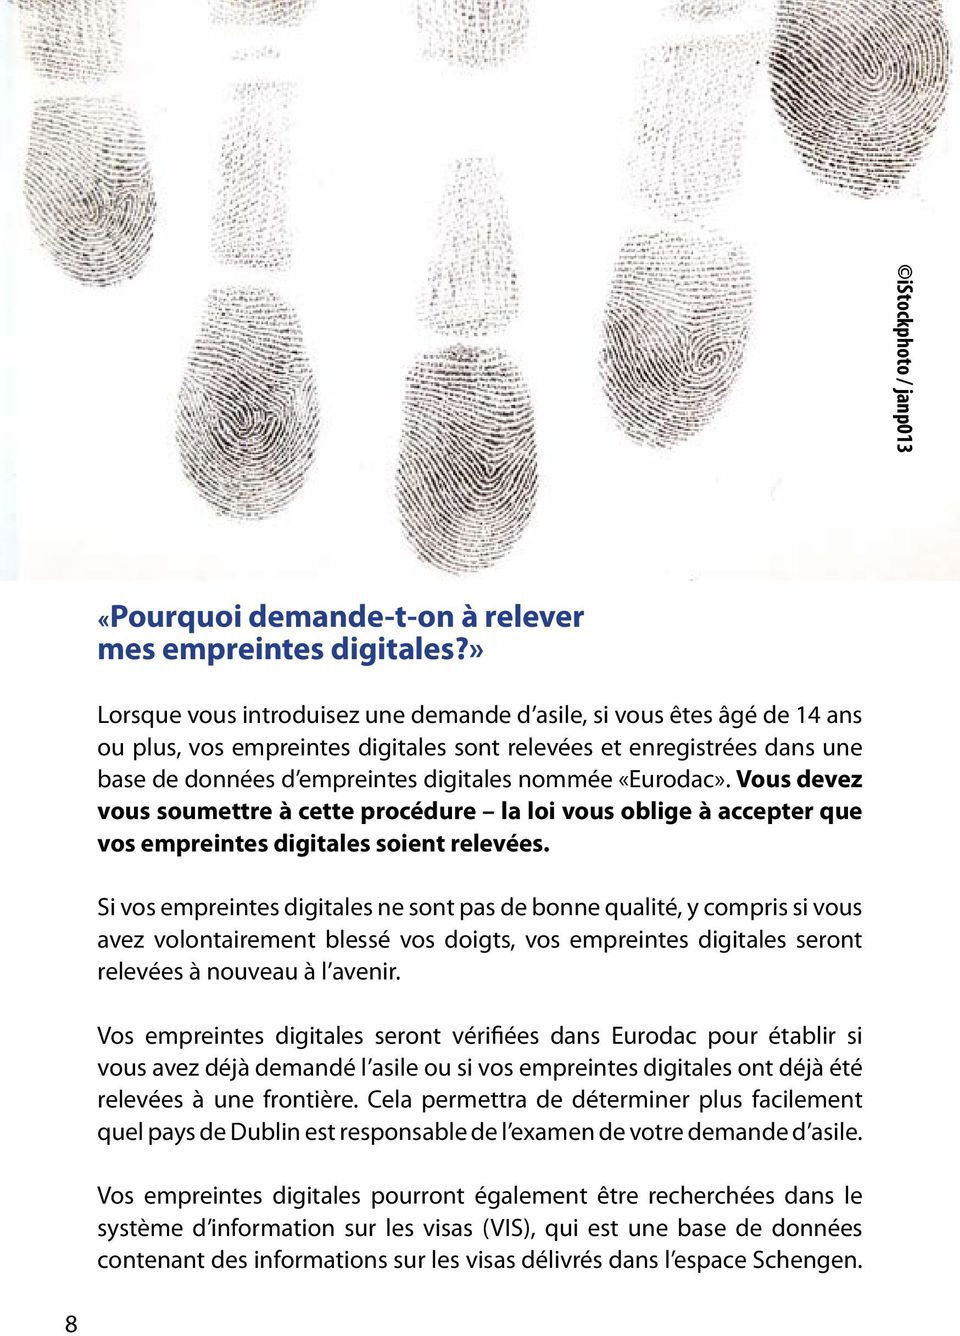 «Eurodac». Vous devez vous soumettre à cette procédure la loi vous oblige à accepter que vos empreintes digitales soient relevées.